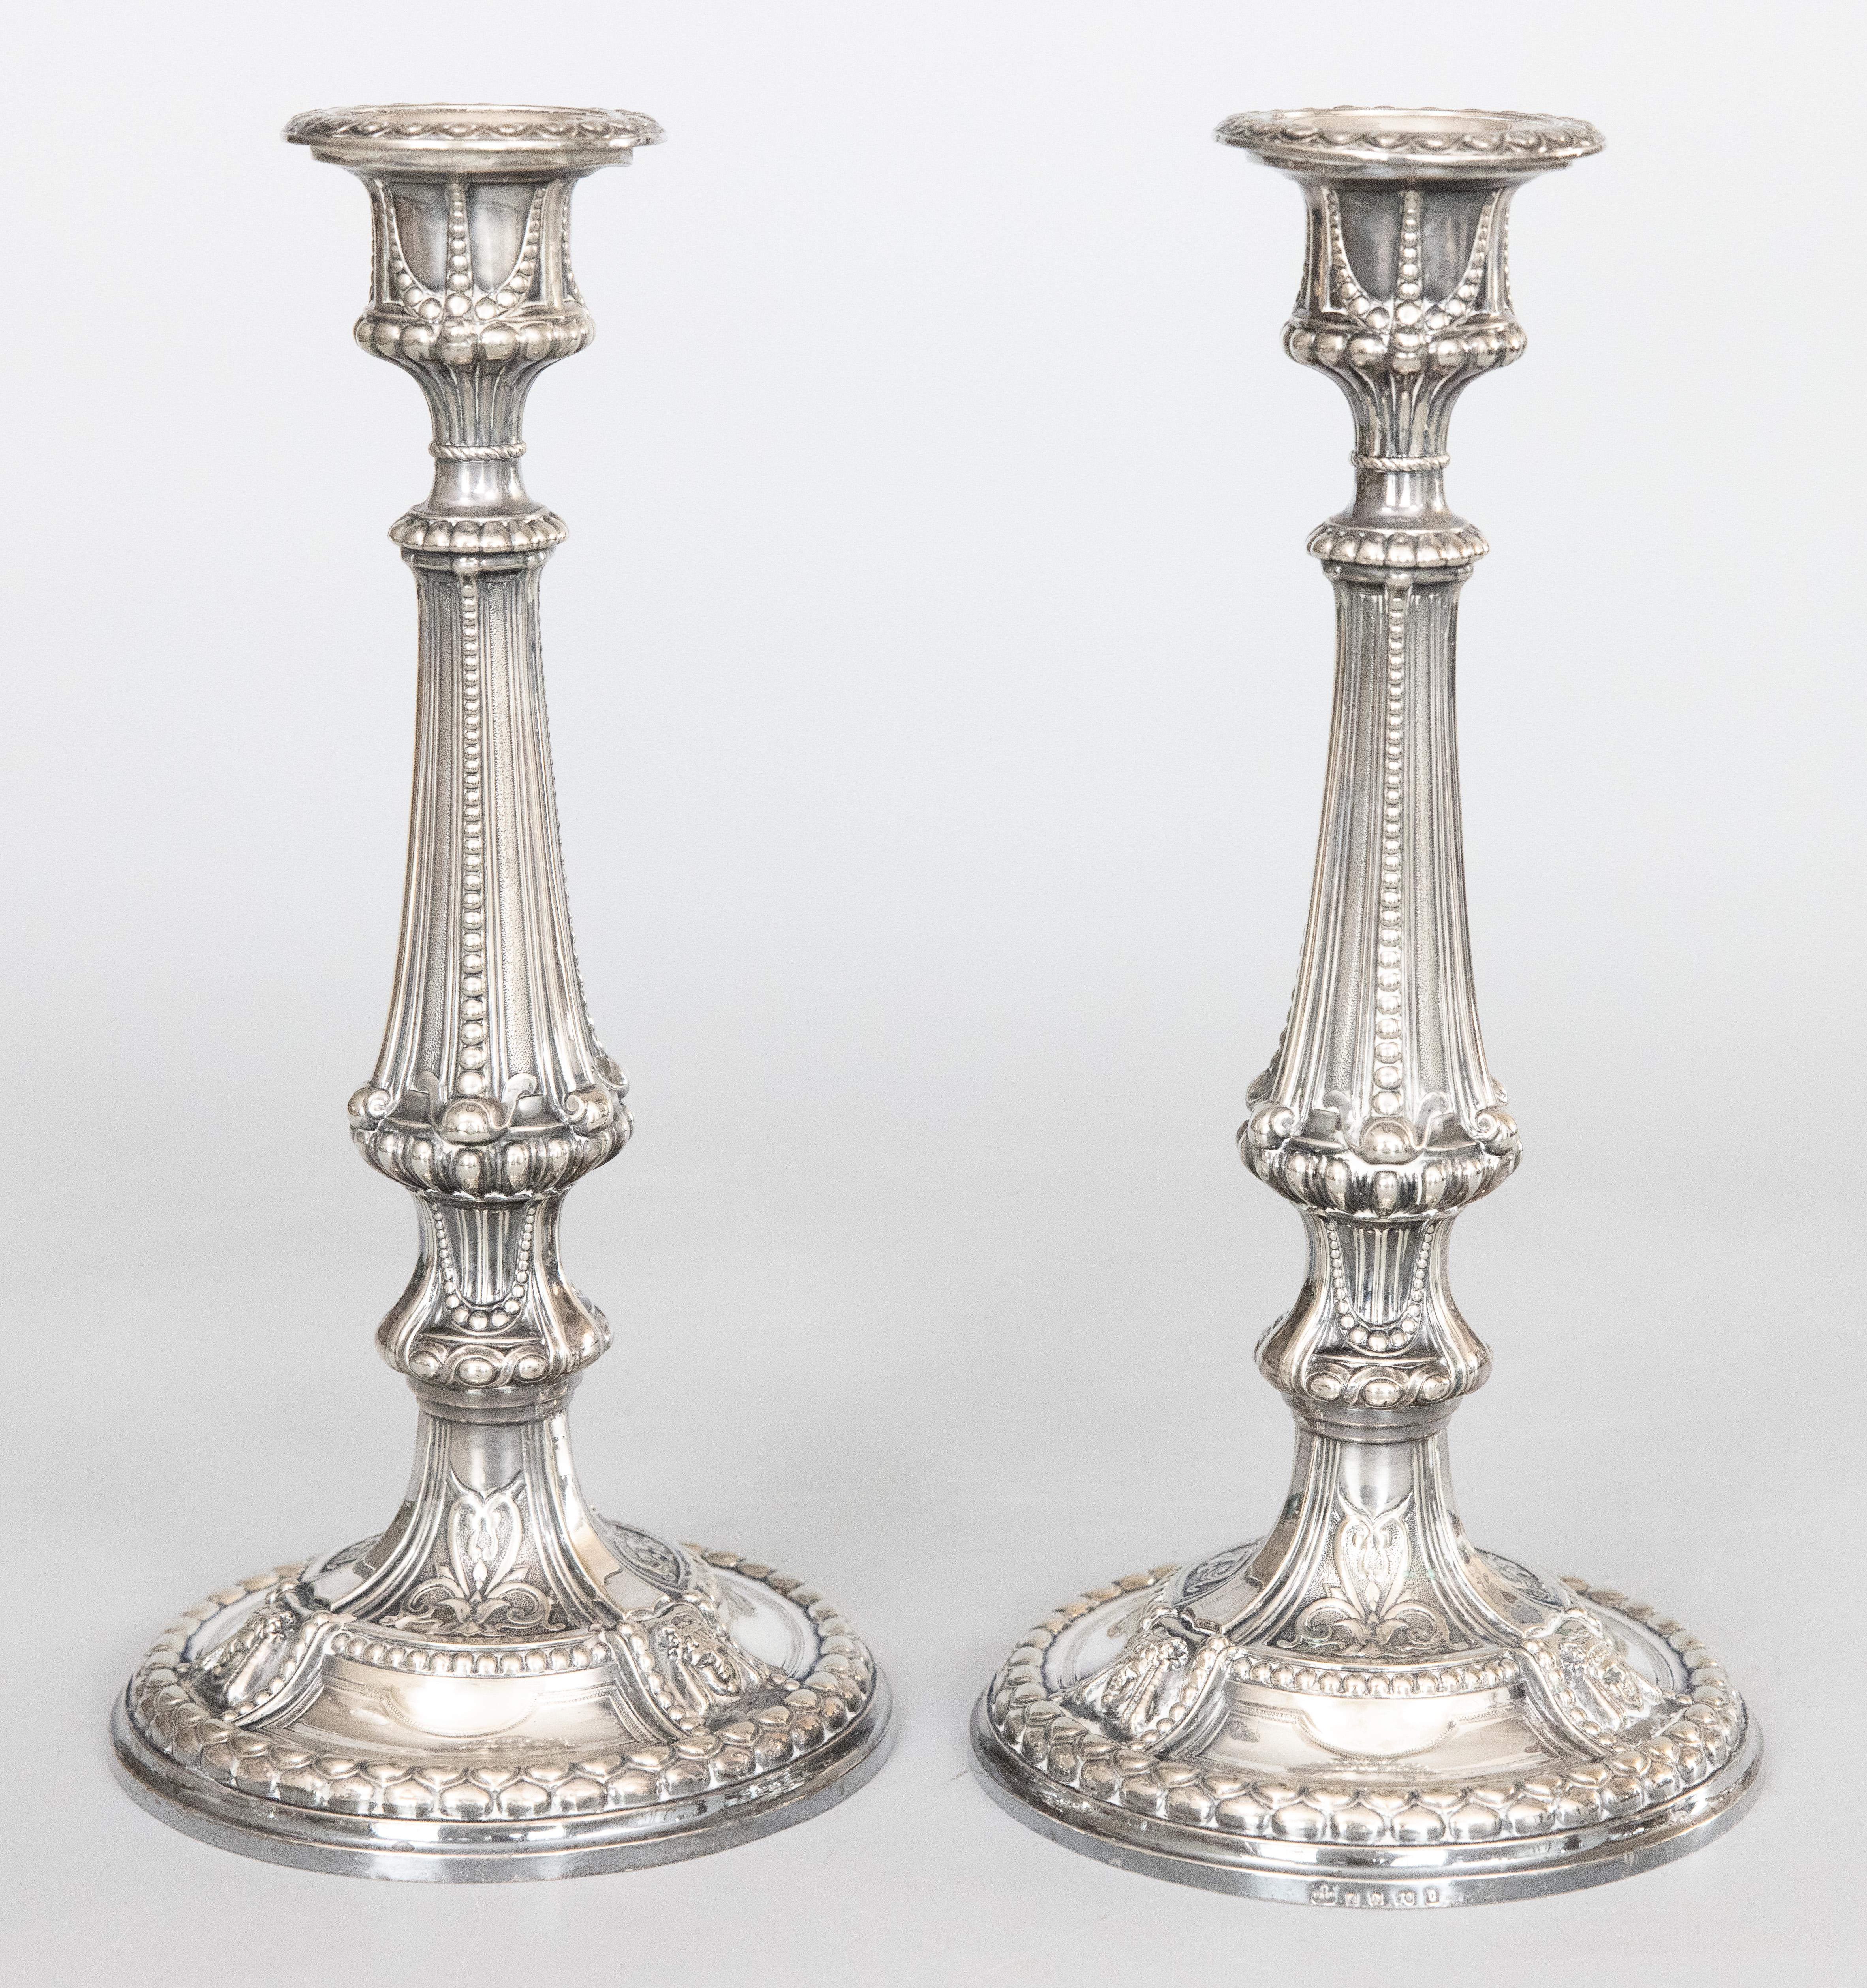 Une belle paire de chandeliers anglais anciens en métal argenté, vers 1900. Poinçon sur la base. Ces magnifiques bougeoirs sont bien fabriqués et lourds, avec un beau design néoclassique et des détails perlés.

DIMENSIONS
5.25ʺW × 5.25ʺD × 11ʺH


